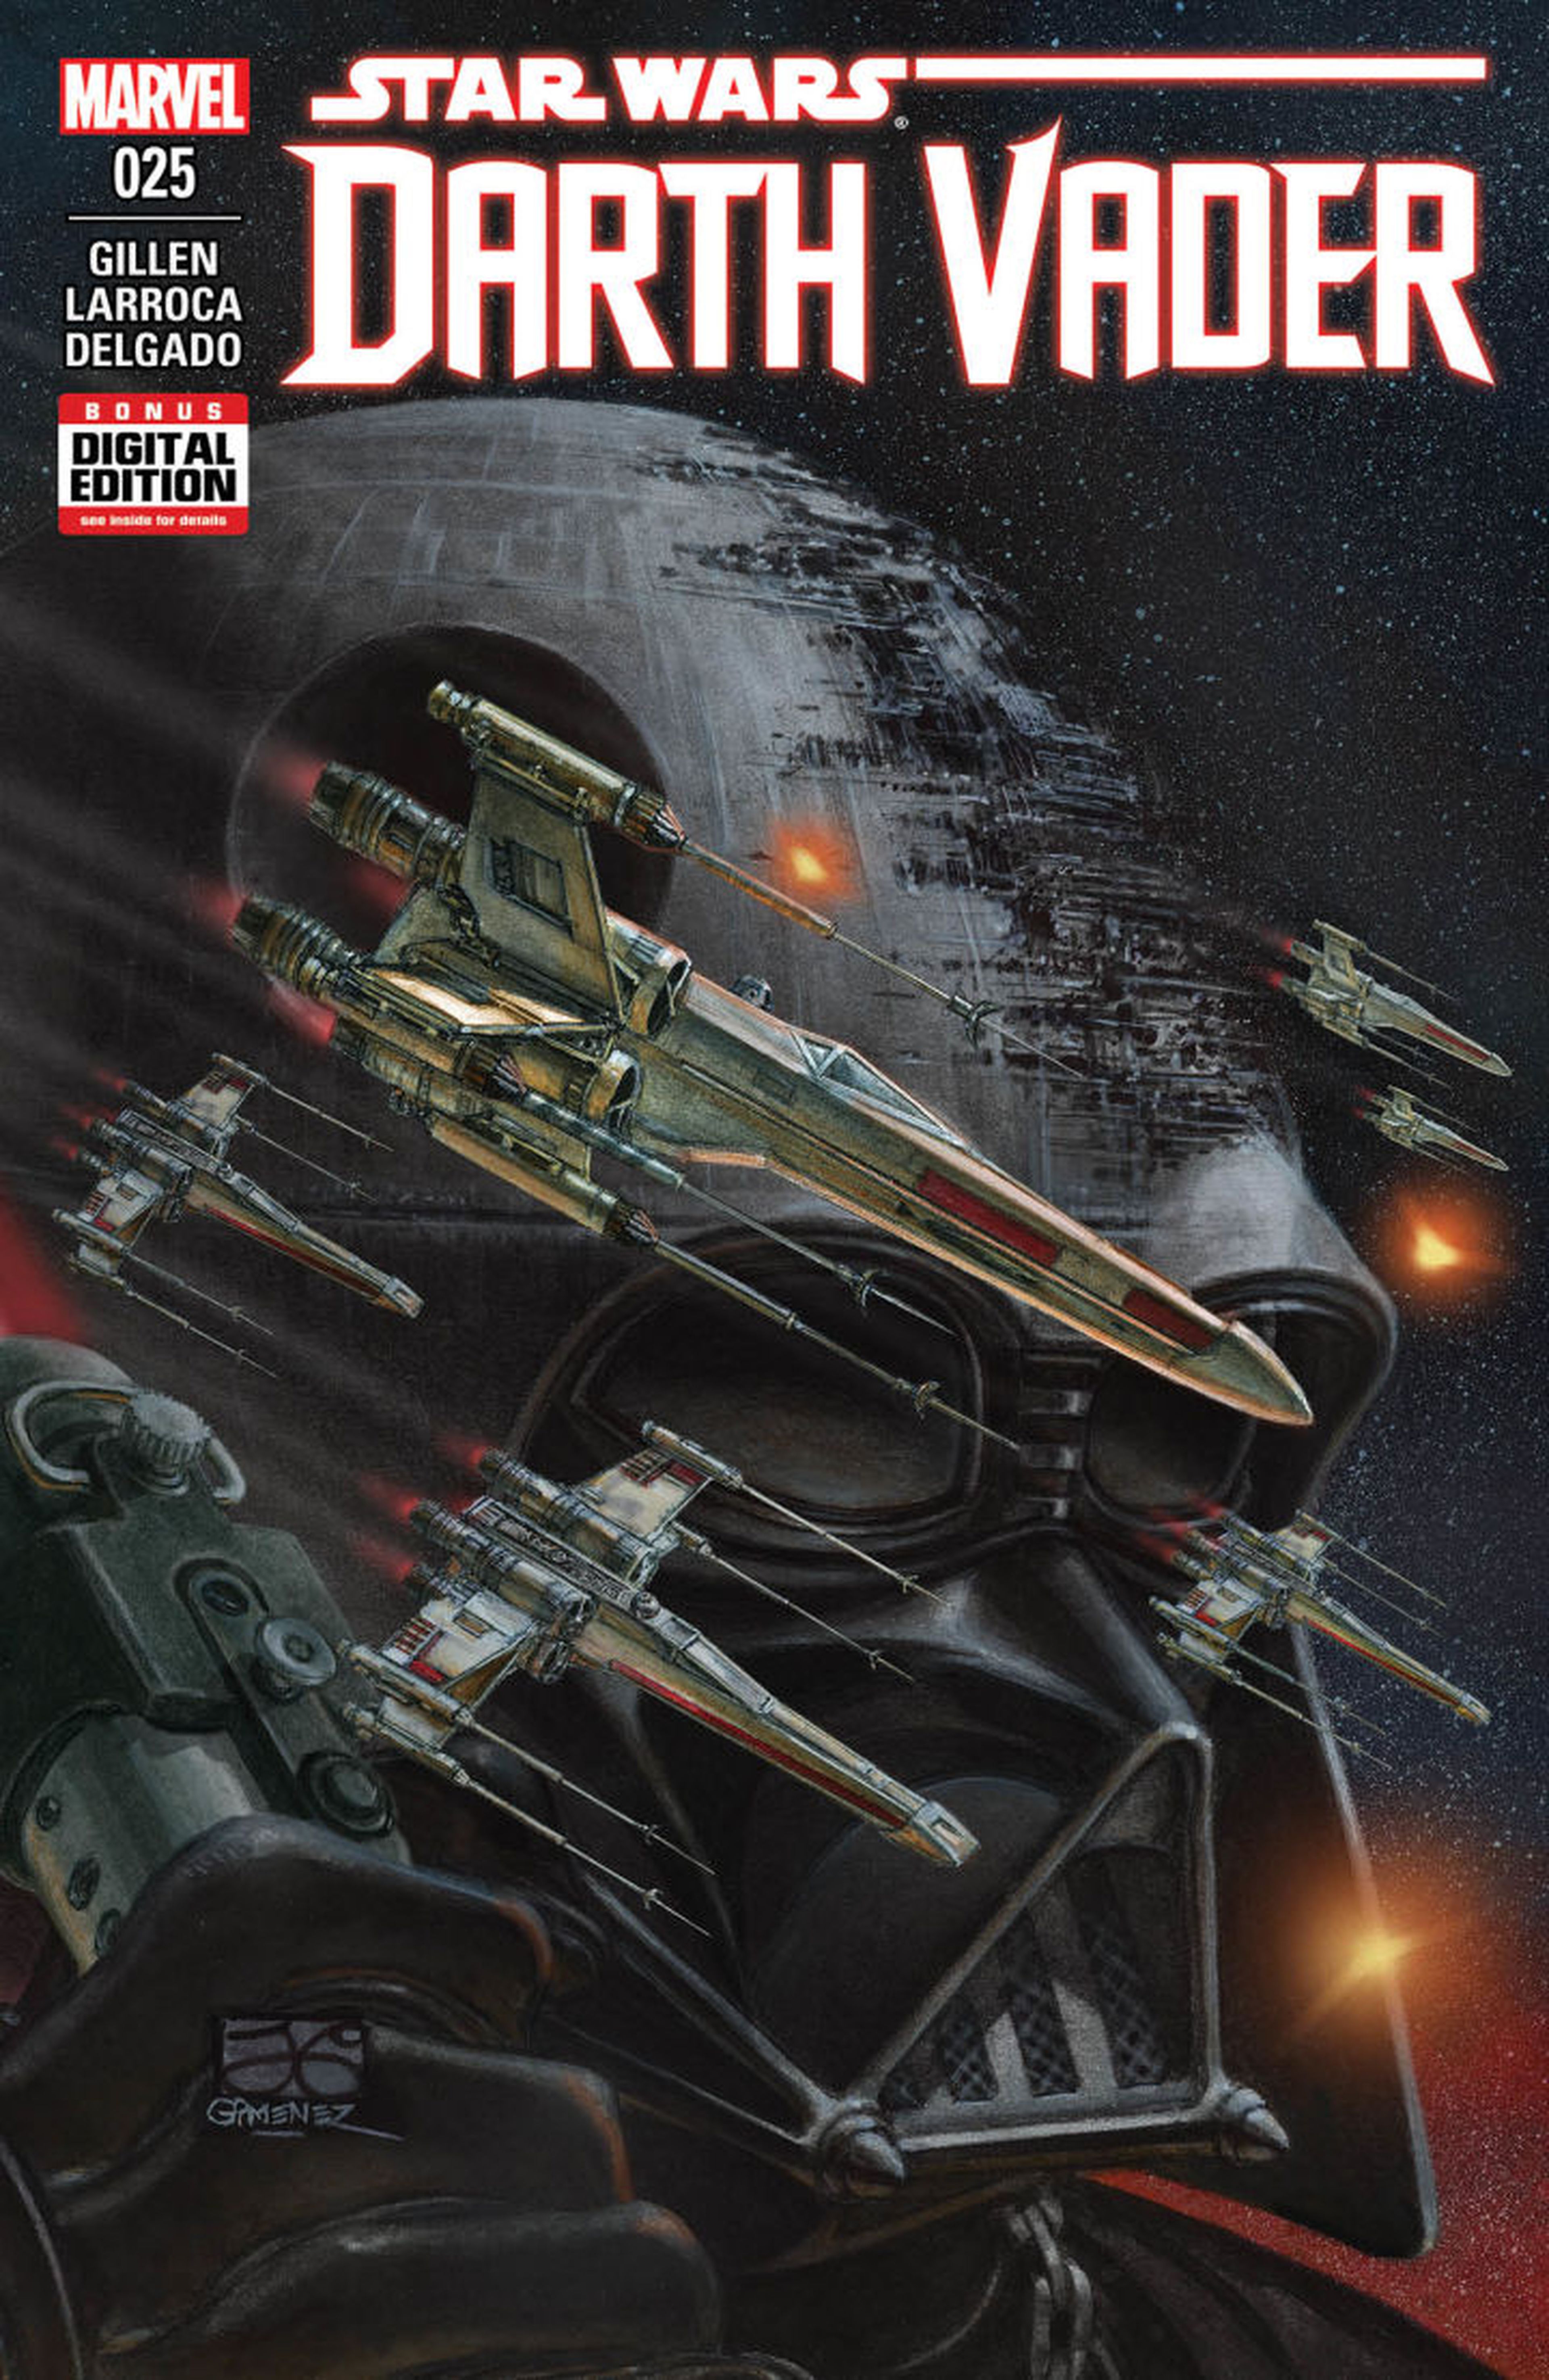 Star Wars - El cómic de Darth Vader acabará en el número 25